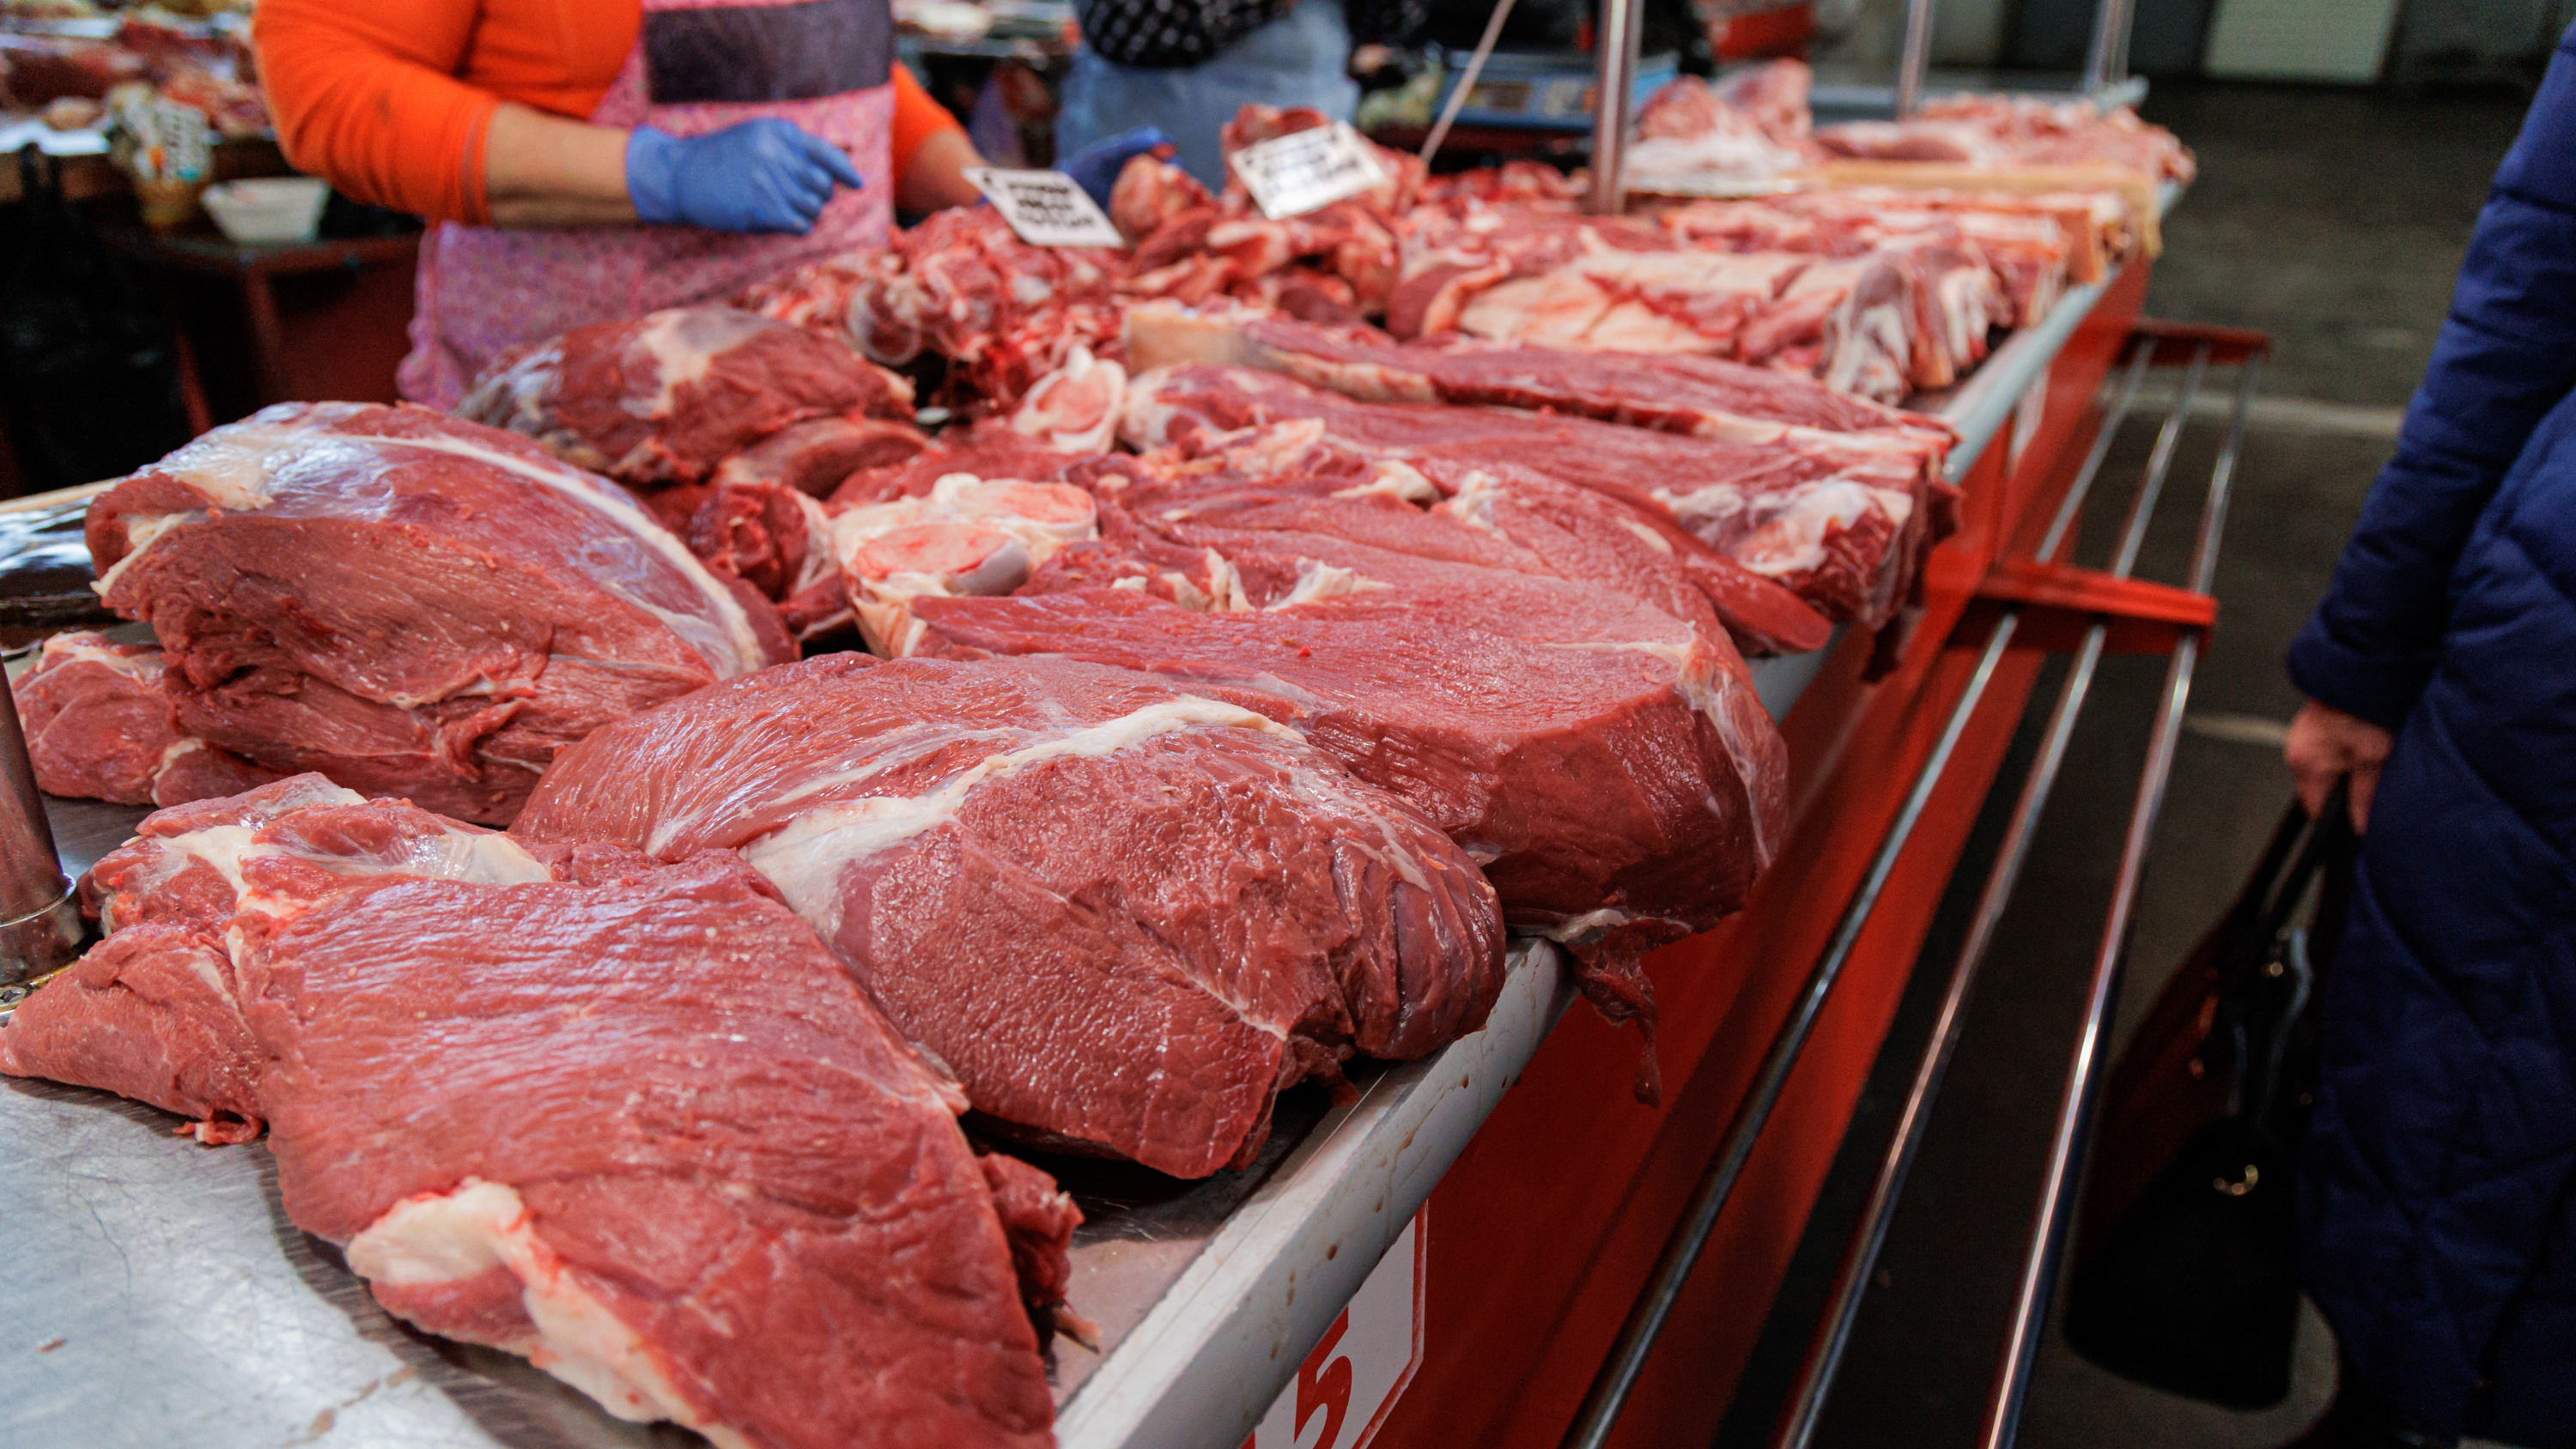 Как проверить мясо на свежесть прямо на рынке: советы красноярского фудблогера и модели plus size